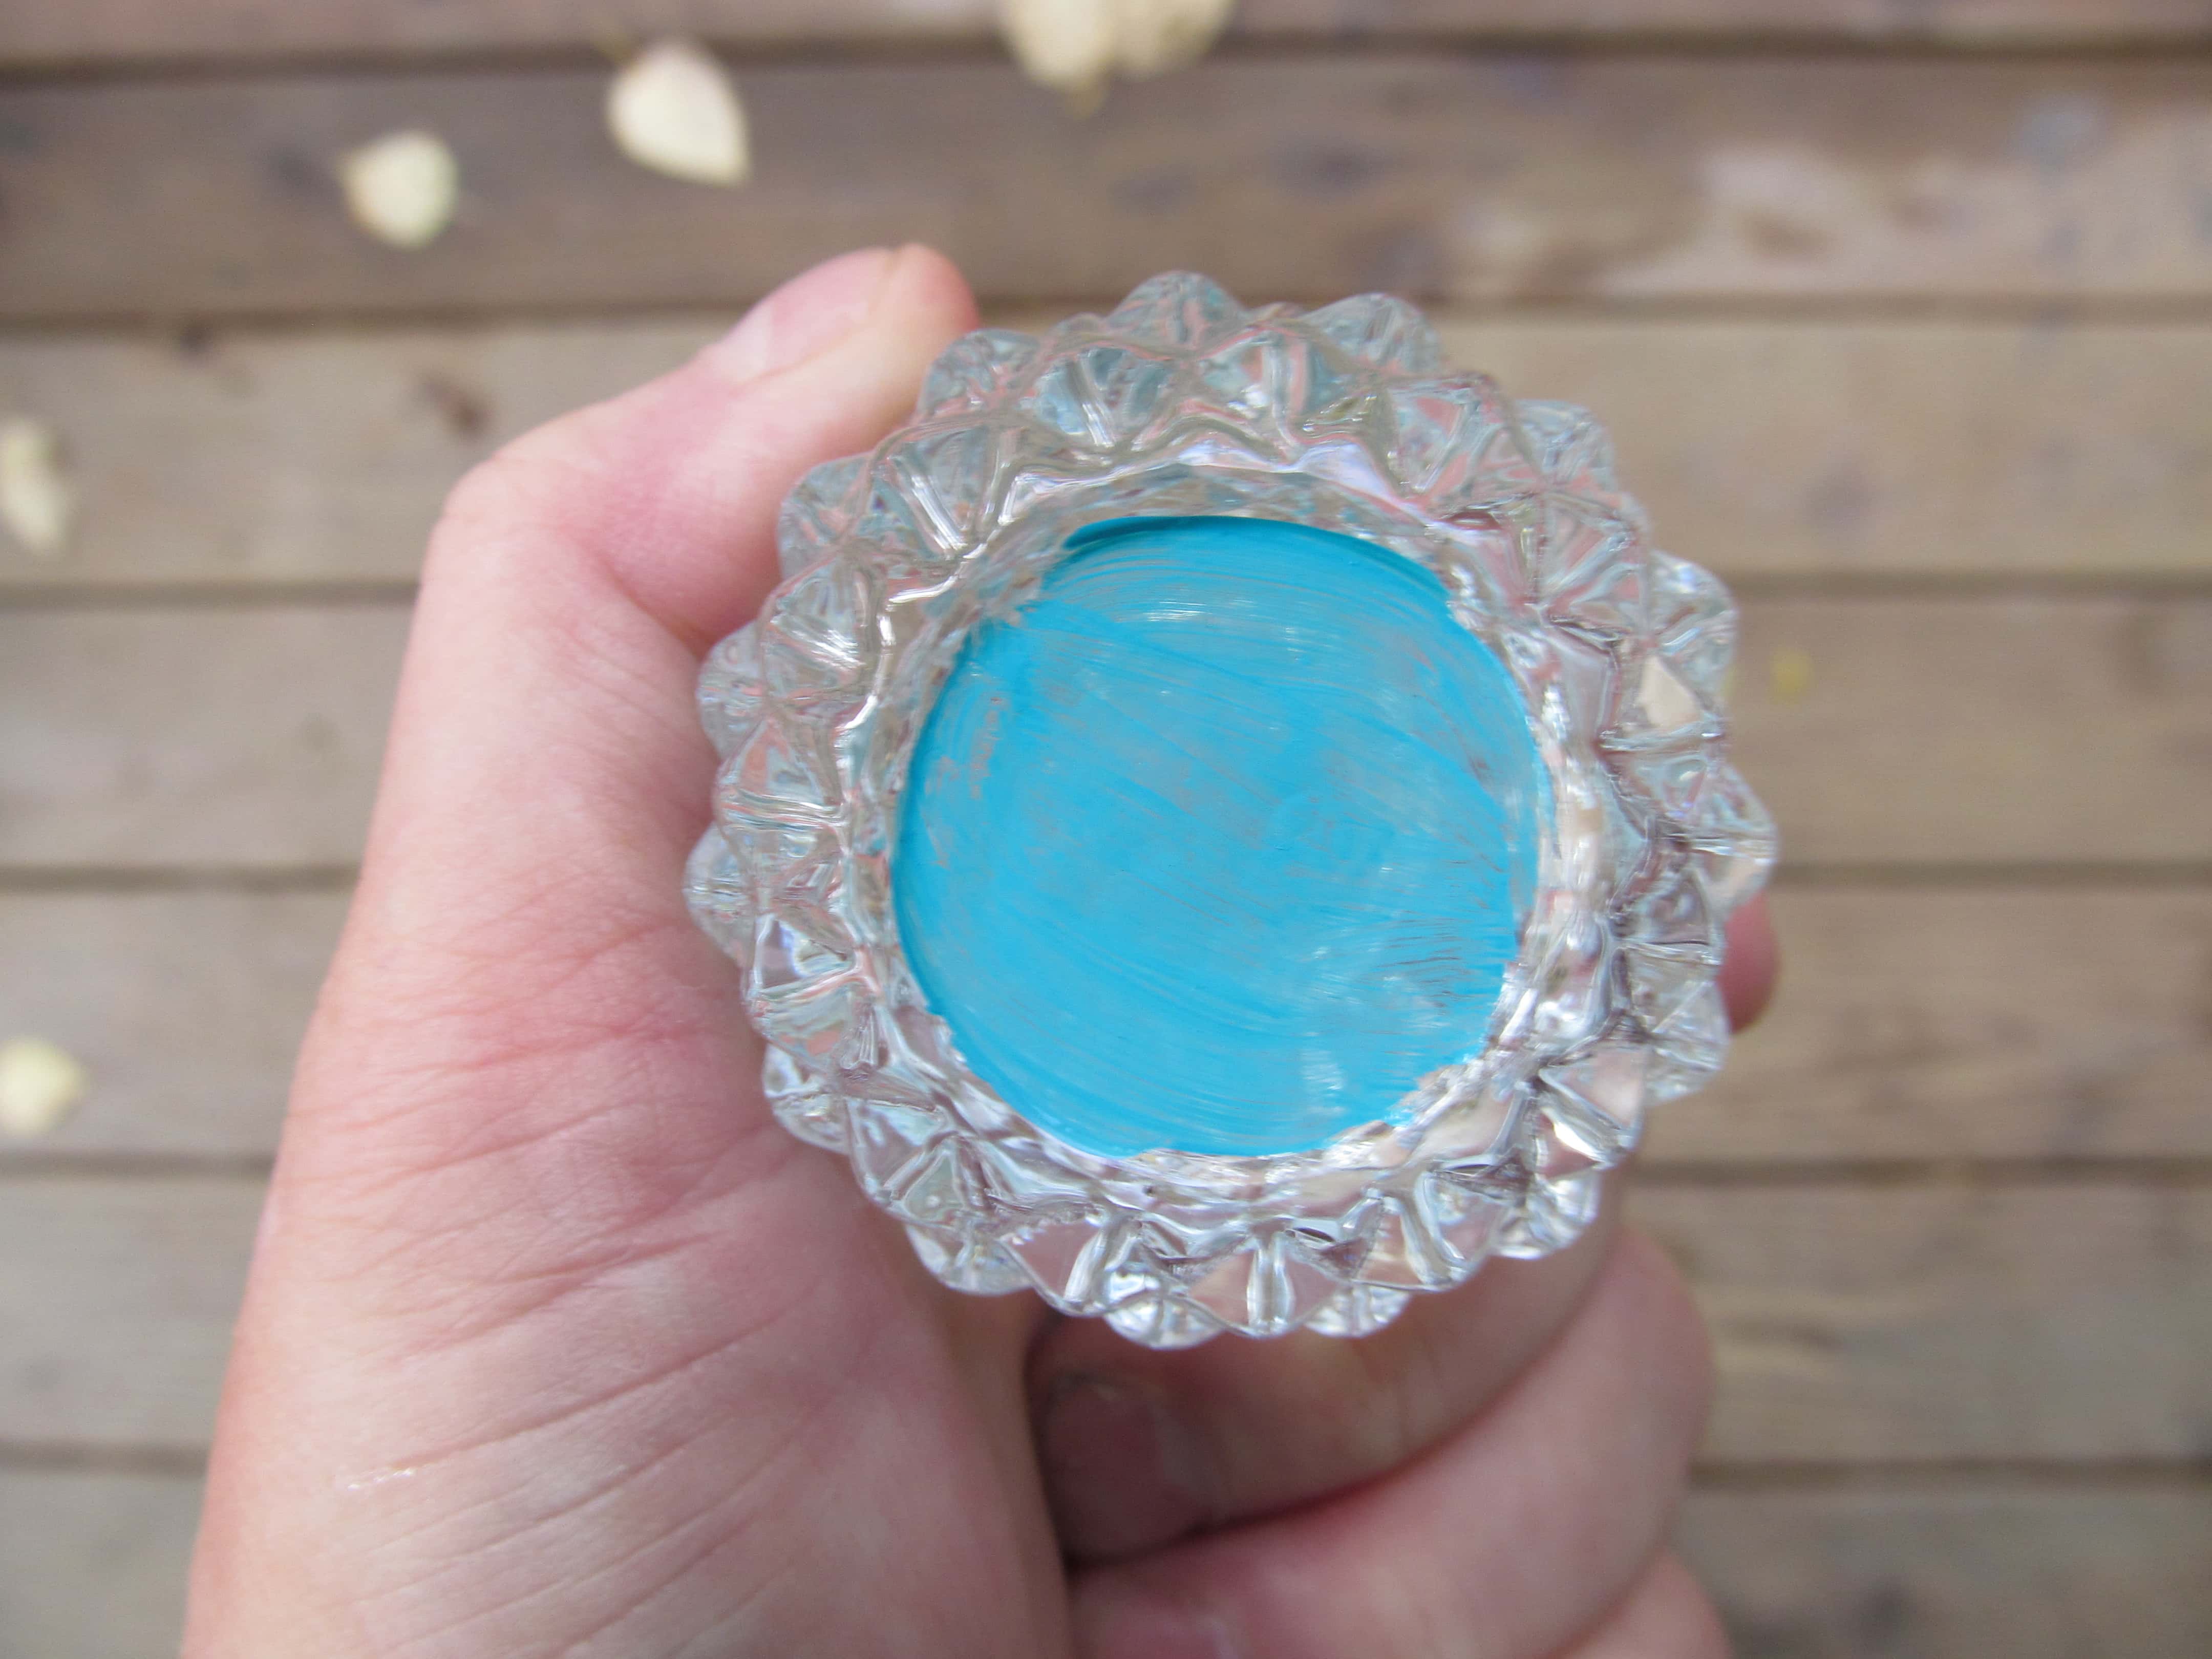 Fondo pintado de un candelabro de vidrio tallado con pintura azul. Refleja el color en todo el vidrio, lo que hace que el vidrio transparente se vea naturalmente azul.